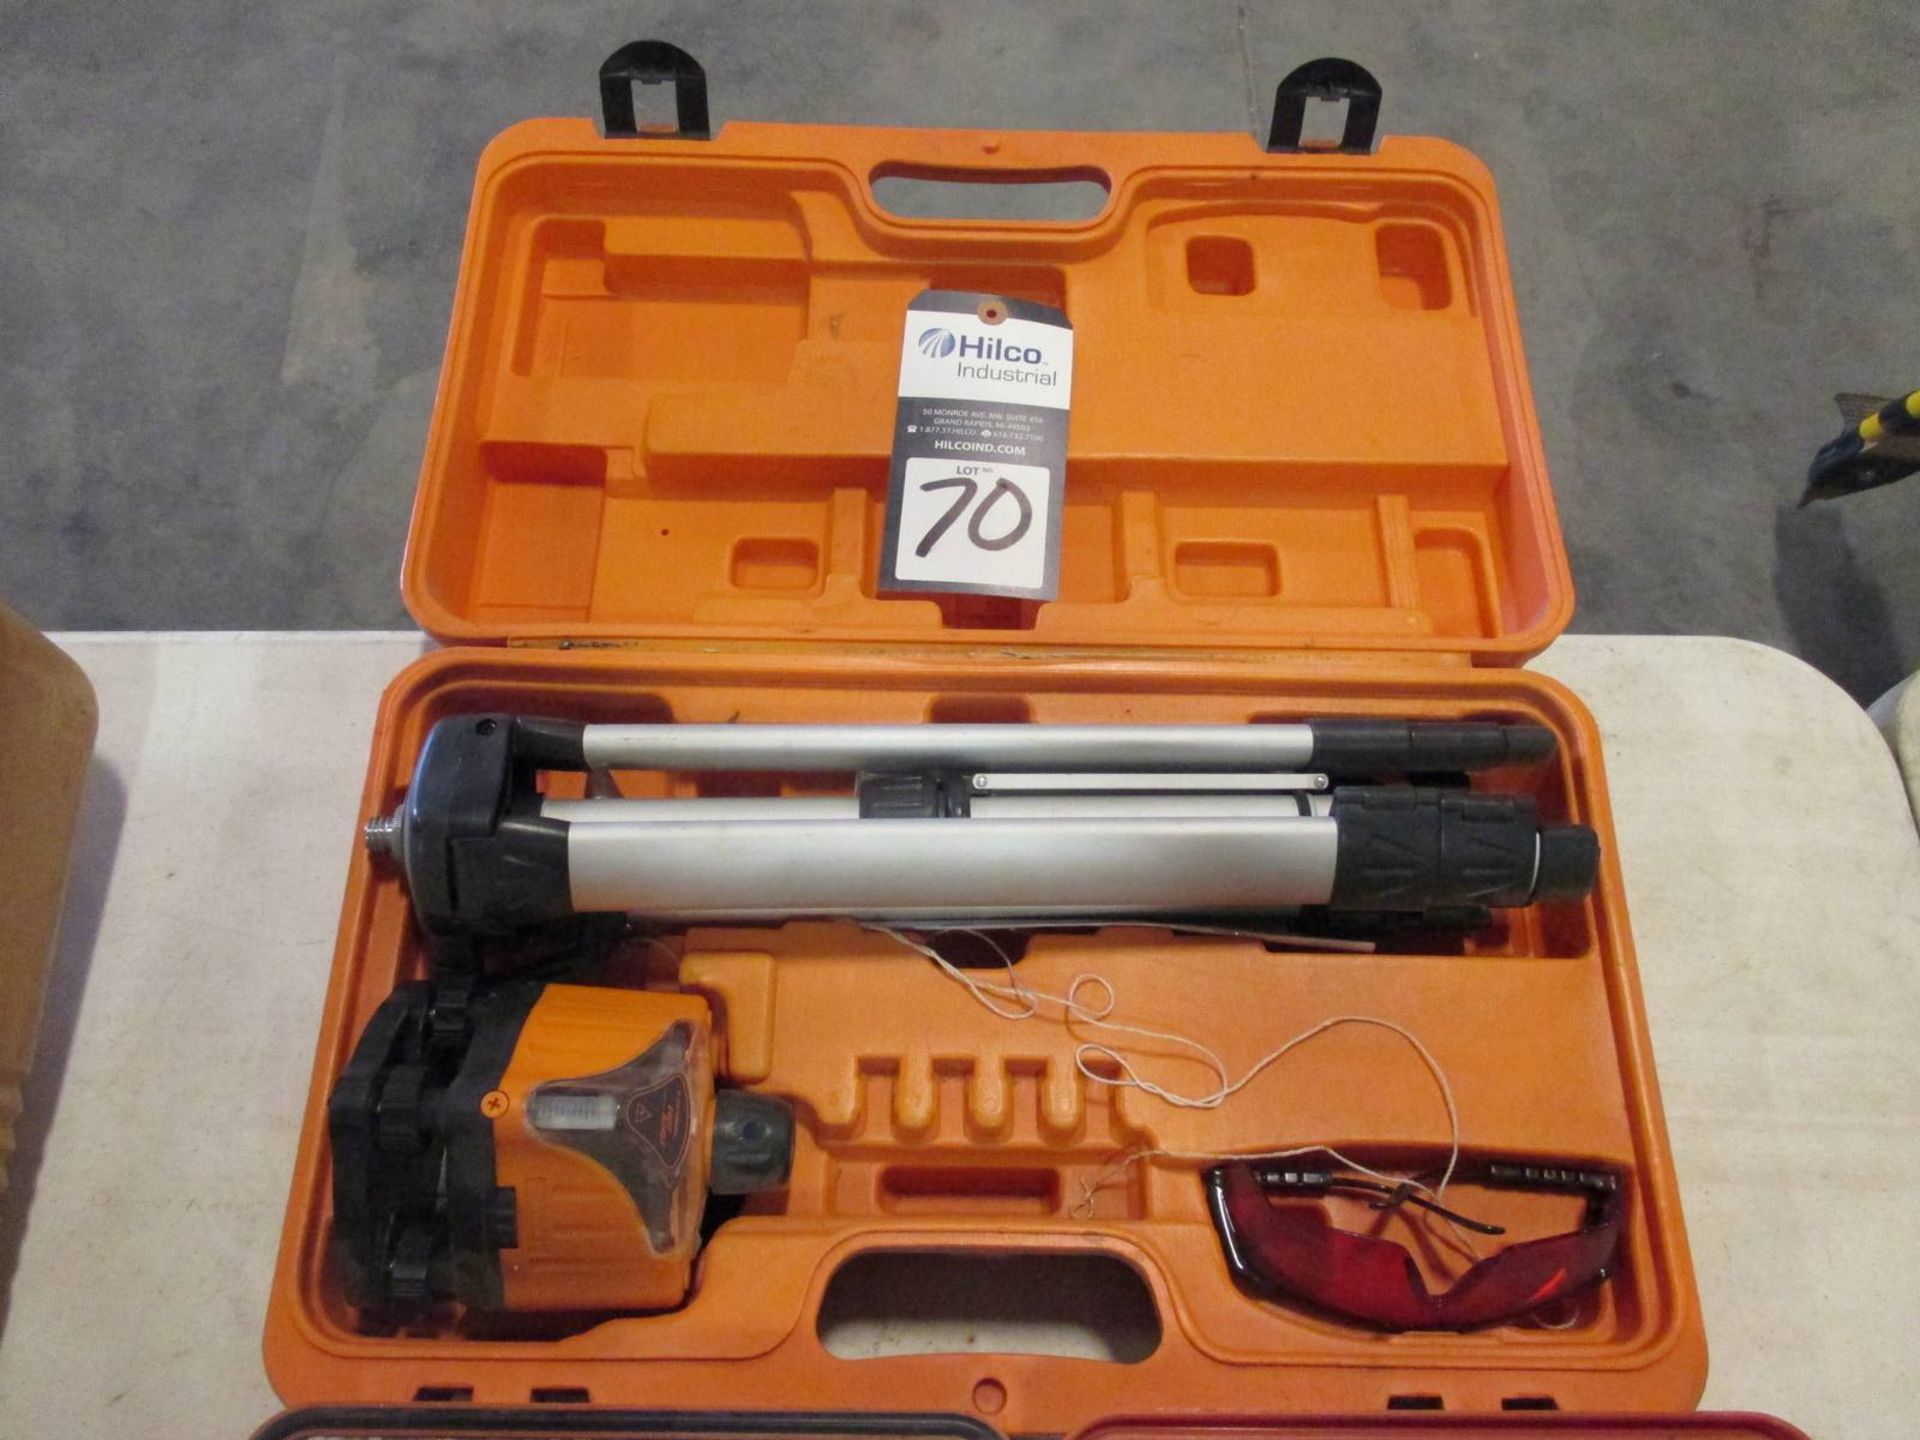 Johnson Model 40-0917 Rotary Laser Level Kit